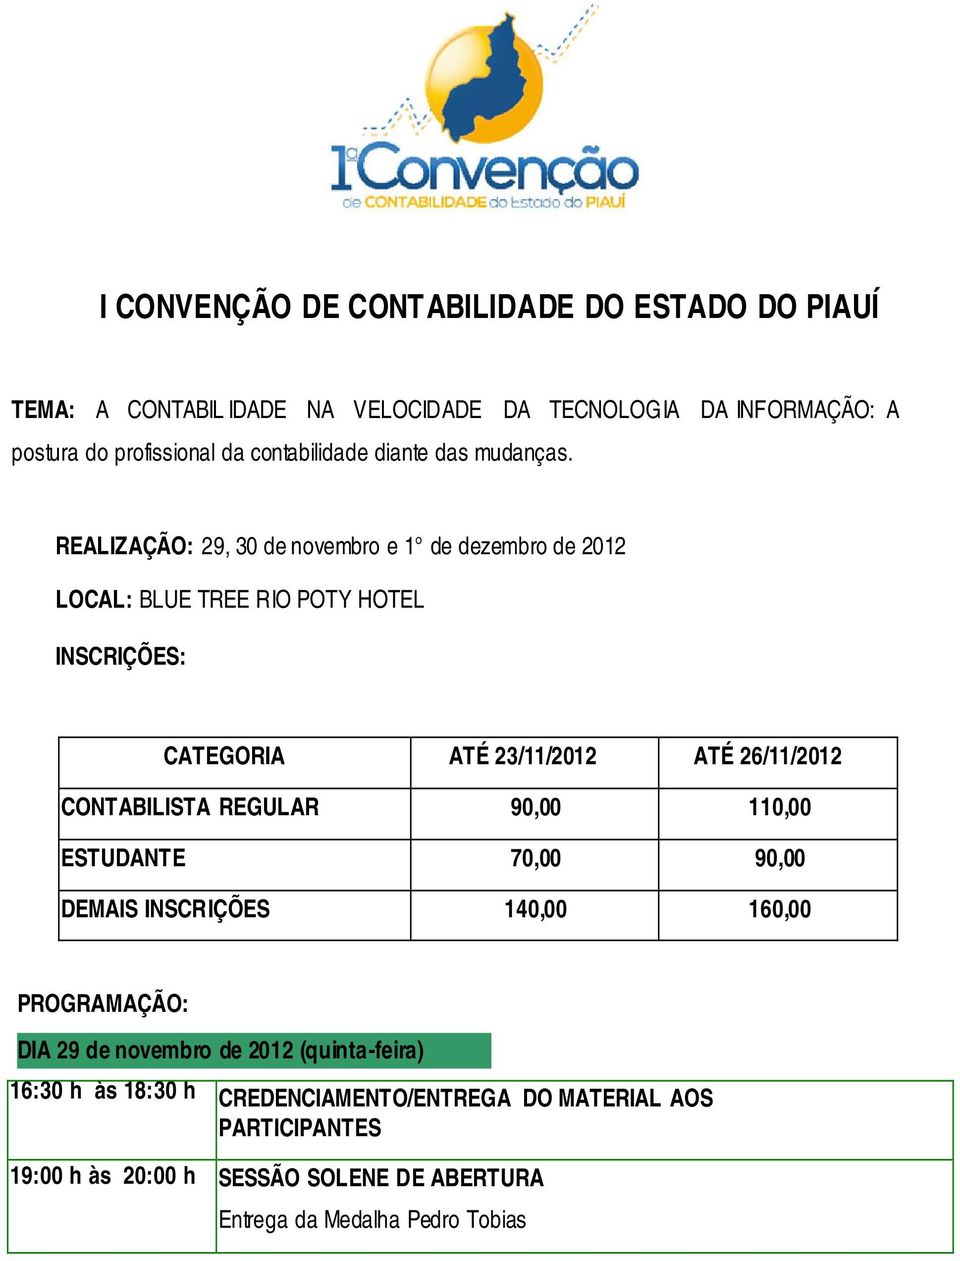 REALIZAÇÃO: 29, 30 de novembro e 1 de dezembro de 2012 LOCAL: BLUE TREE RIO POTY HOTEL INSCRIÇÕES: CATEGORIA ATÉ 23/11/2012 ATÉ 26/11/2012 CONTABILISTA